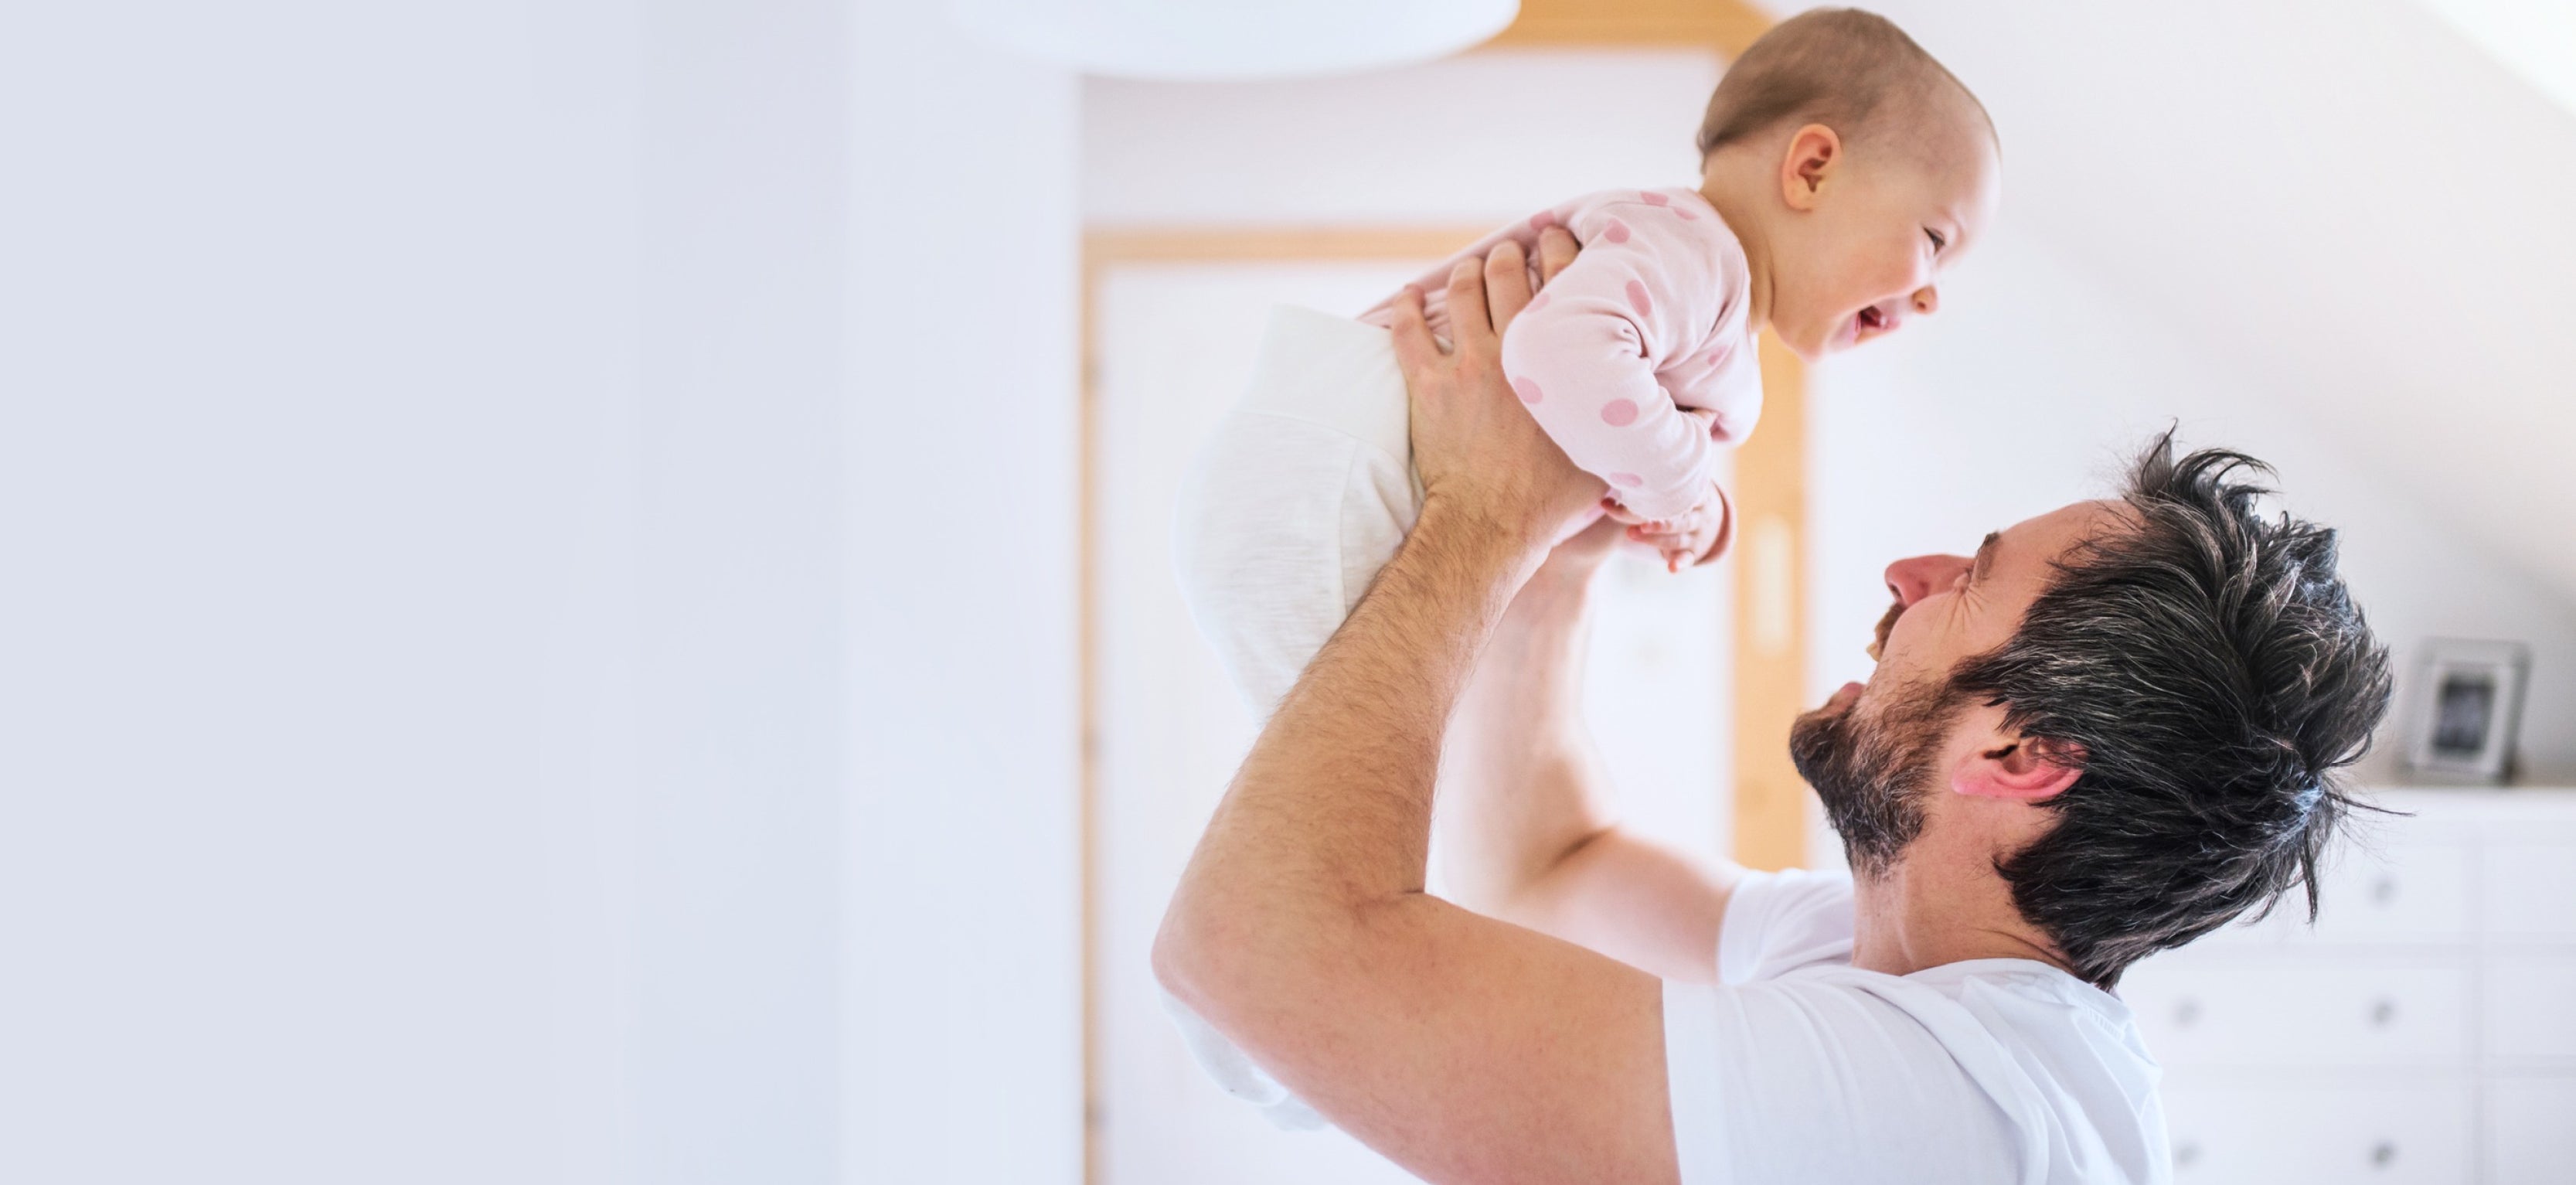 5 Ways for Dad to Bond with Baby BodyICE Australia